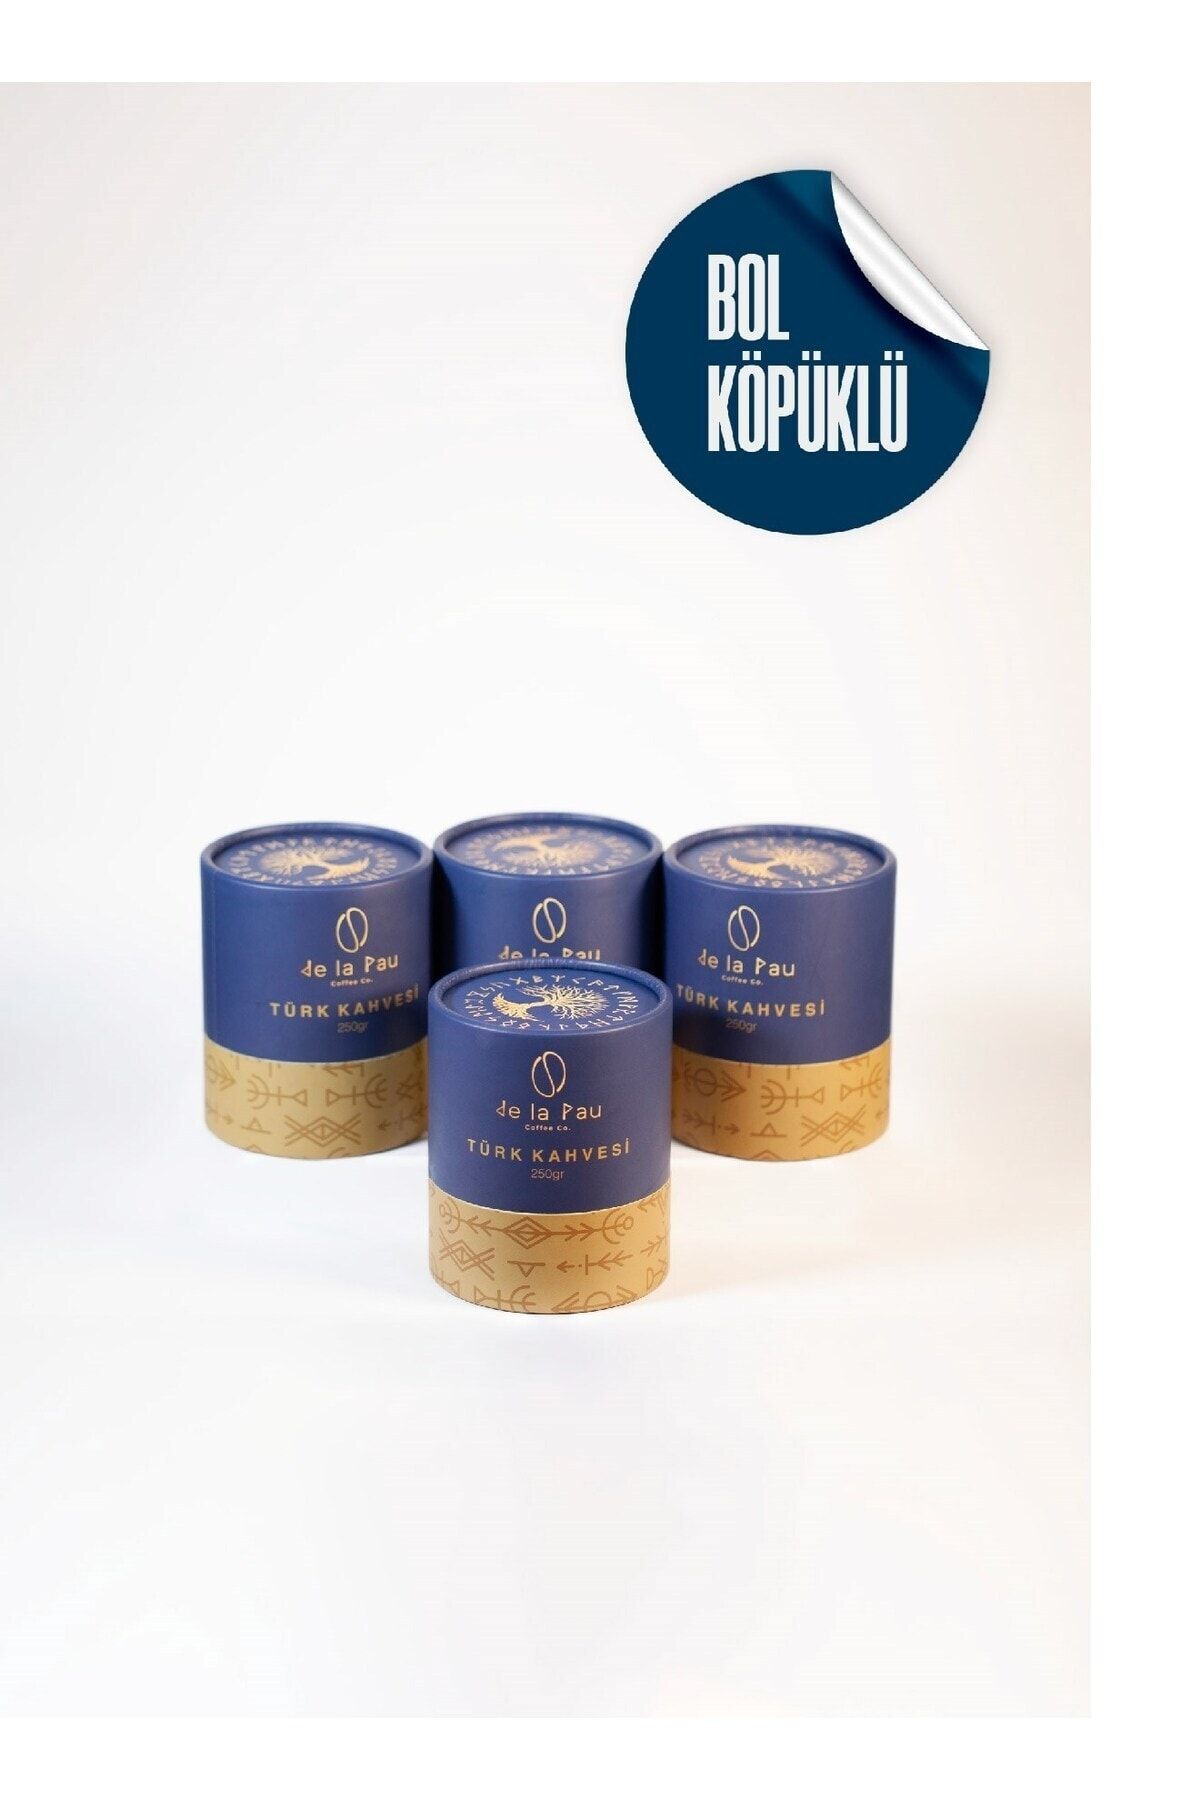 DELAPAU Türk Kahvesi Premium Taze Öğütülmüş Bol Köpüklü Özel Silindir Kutu 250 gr 4'lü